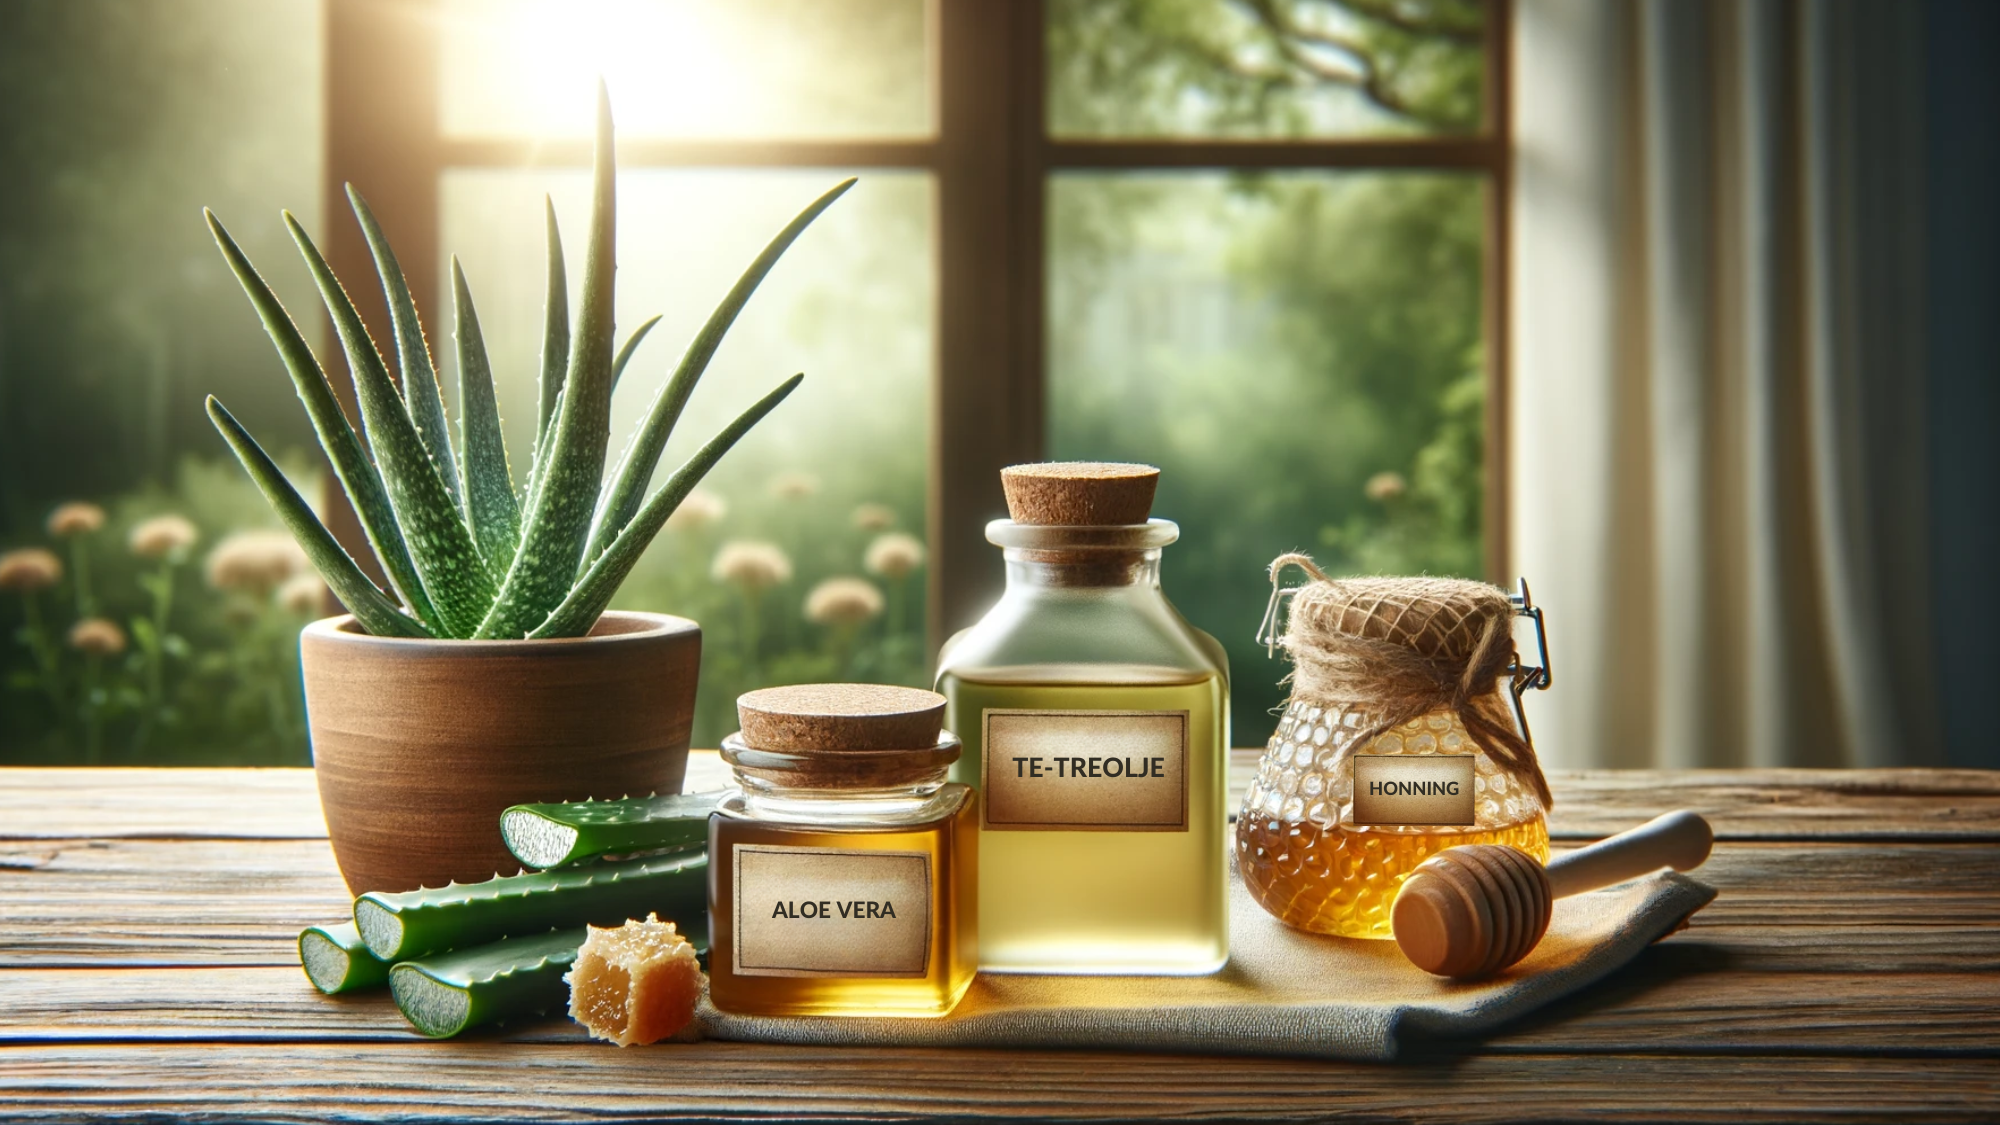 Naturlige remedier mot munnsår: te-treolje, aloe vera og honning på et bord med naturlig bakgrunn.